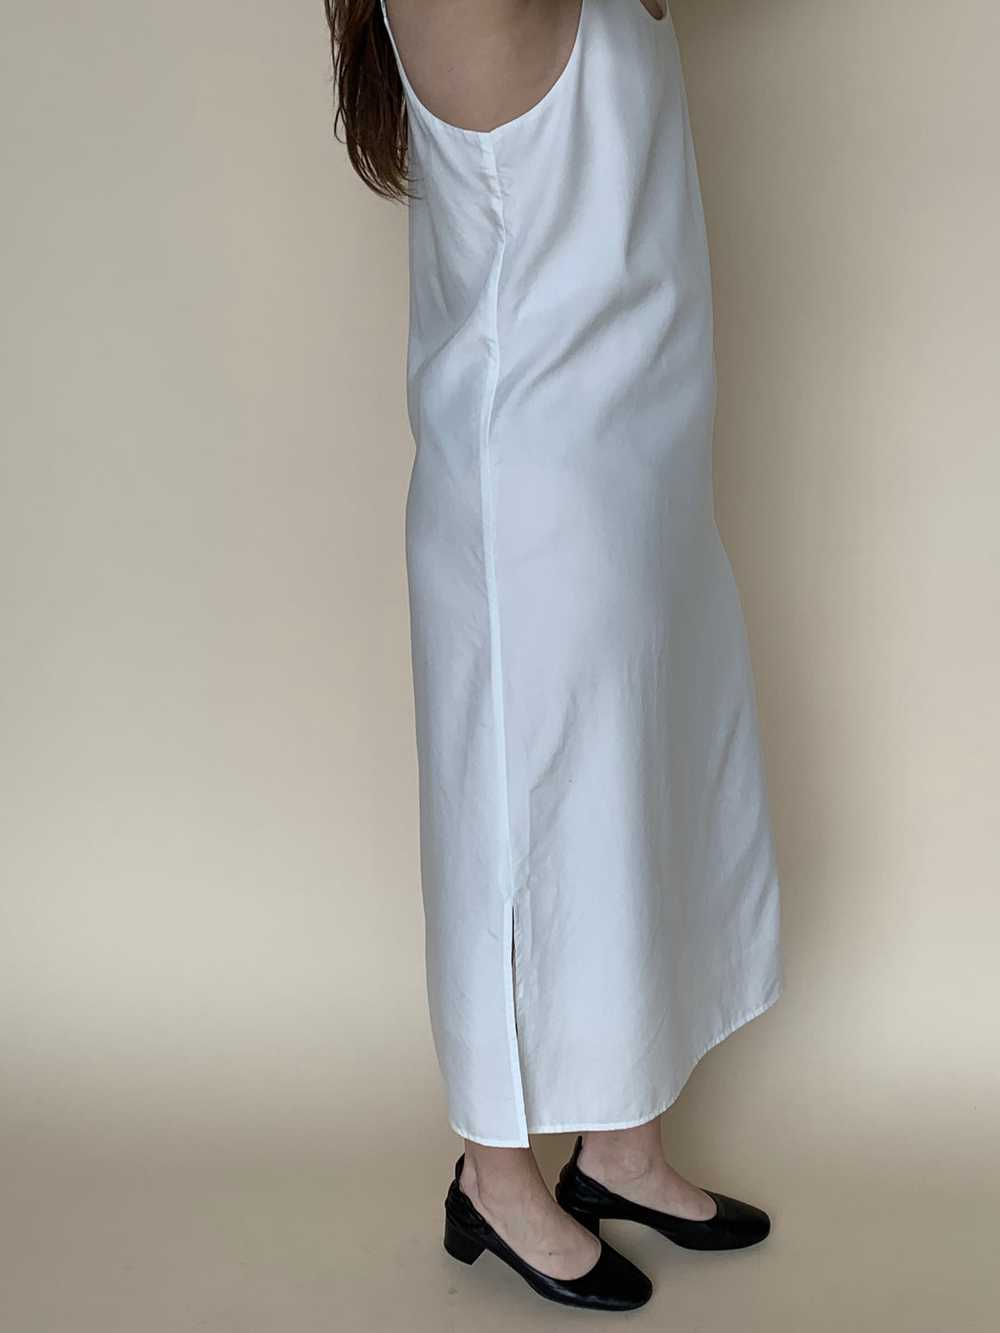 Eileen Fisher white slip dress - image 4